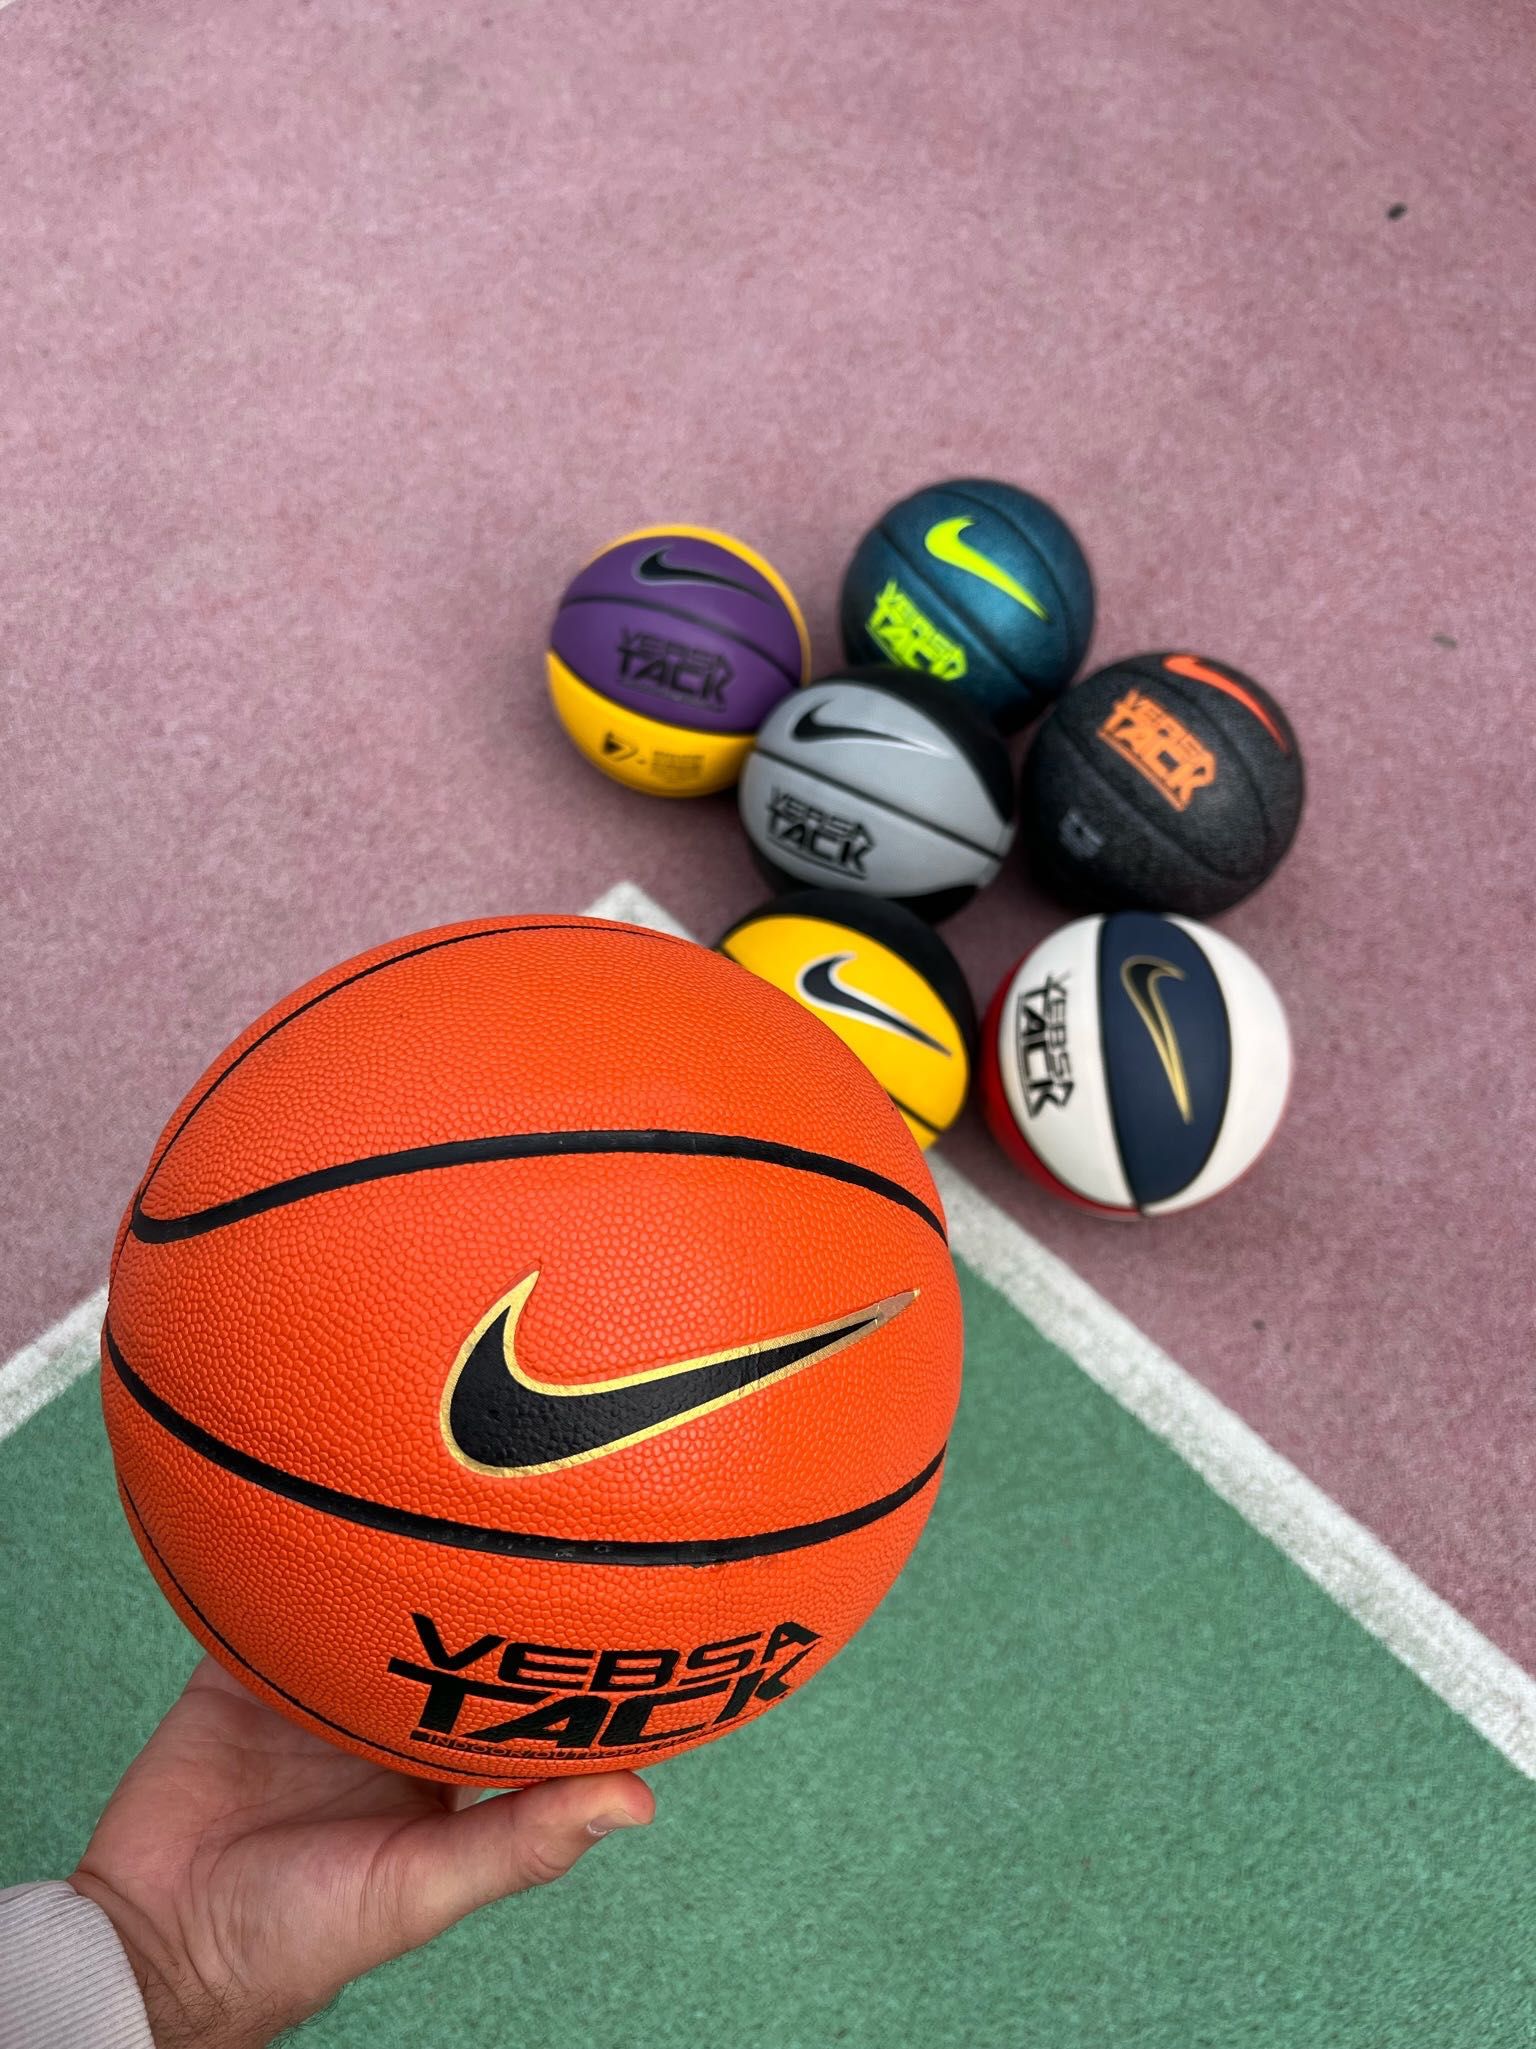 Баскетбольный мяч Nike Versa Tack размер 7. Оптом и в розницу в Алматы